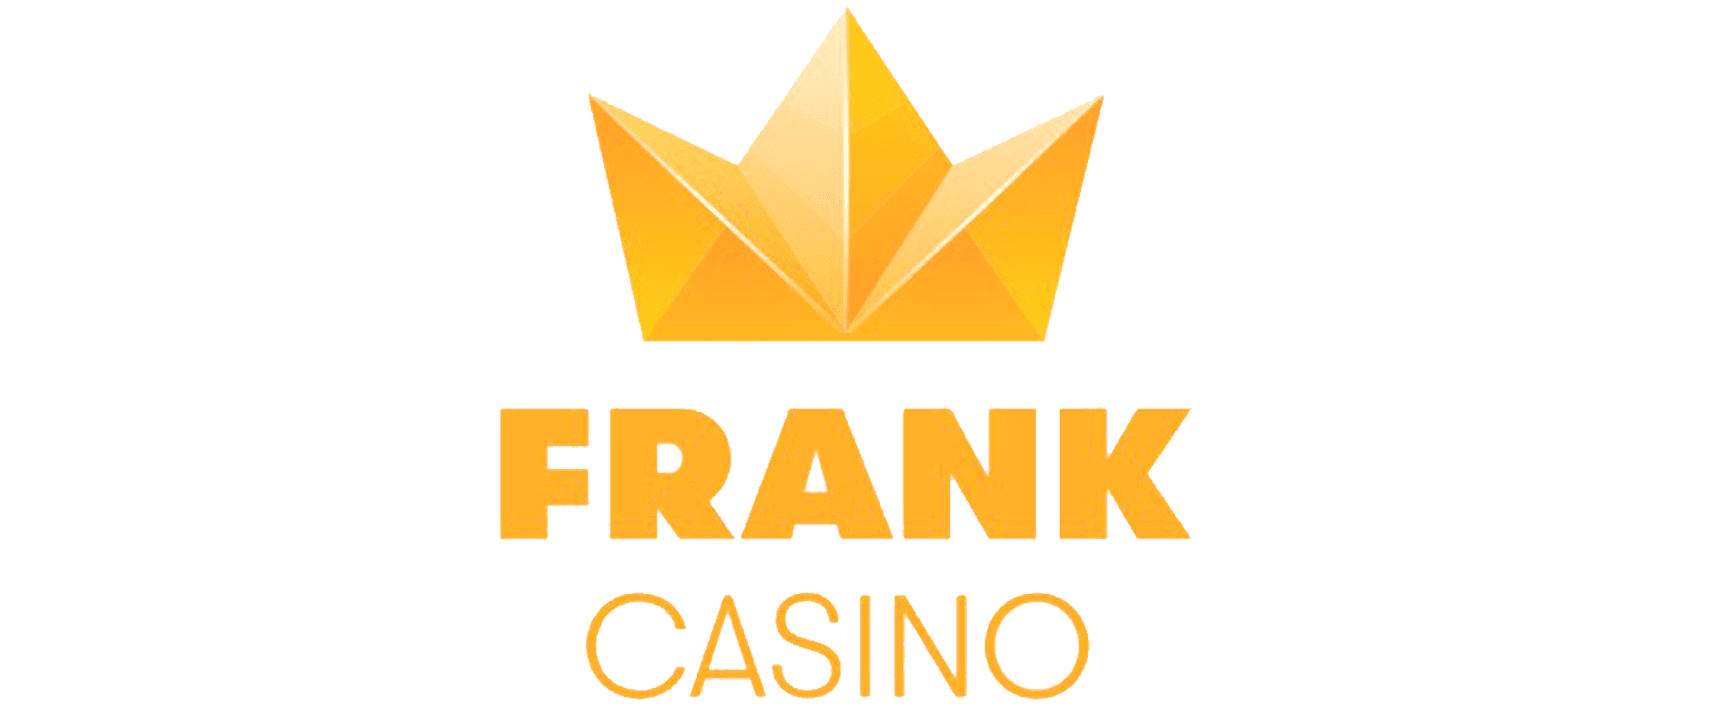 Casino king slot machine